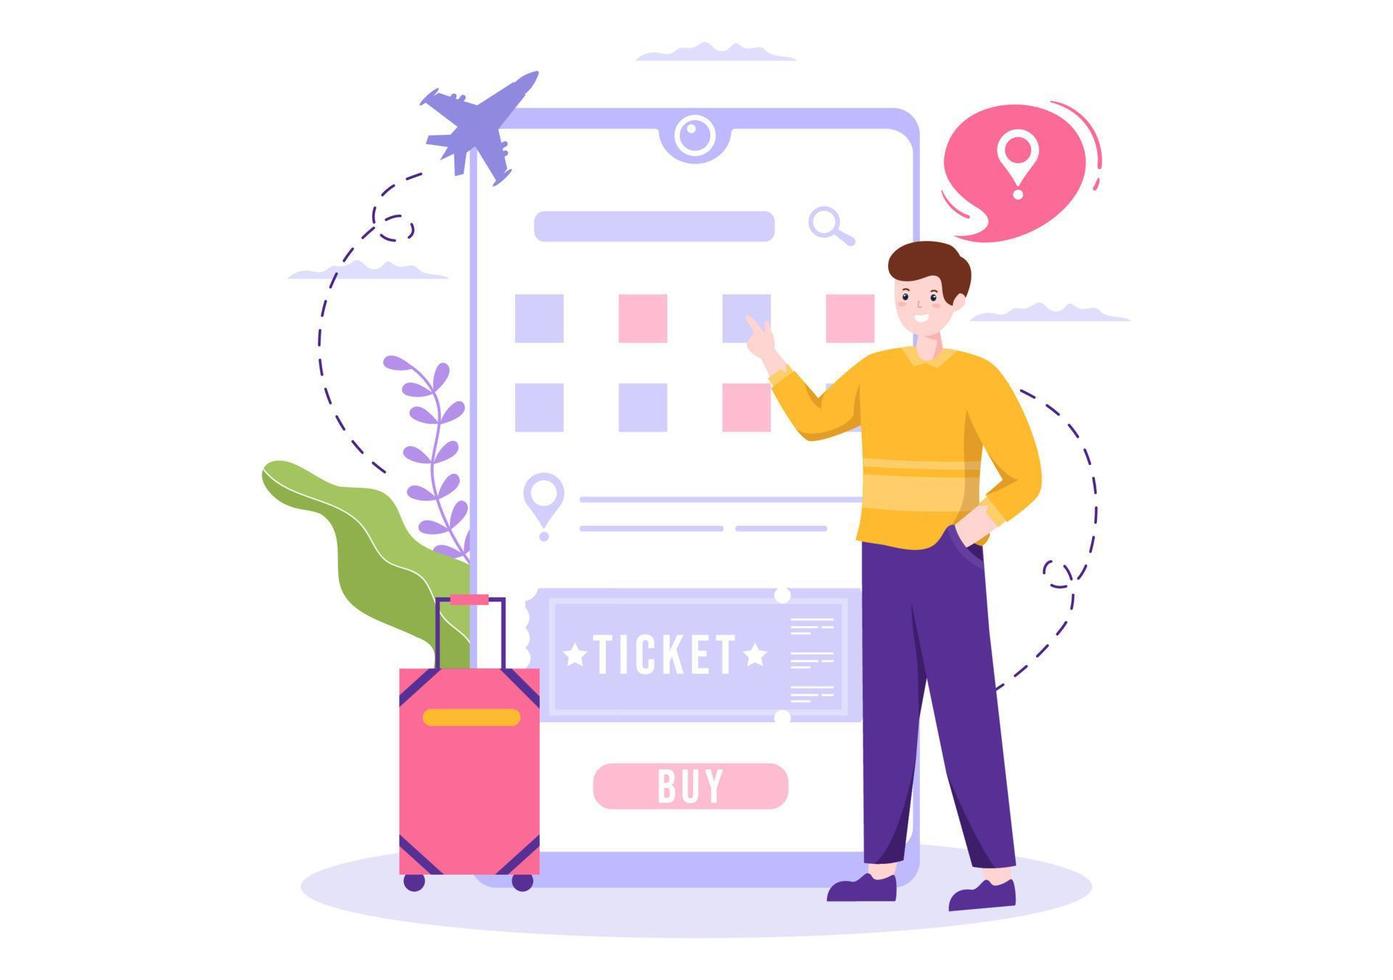 biglietto viaggio in linea prenotazione servizio App su smartphone modello mano disegnato cartone animato piatto illustrazione per viaggio pianificazione vettore